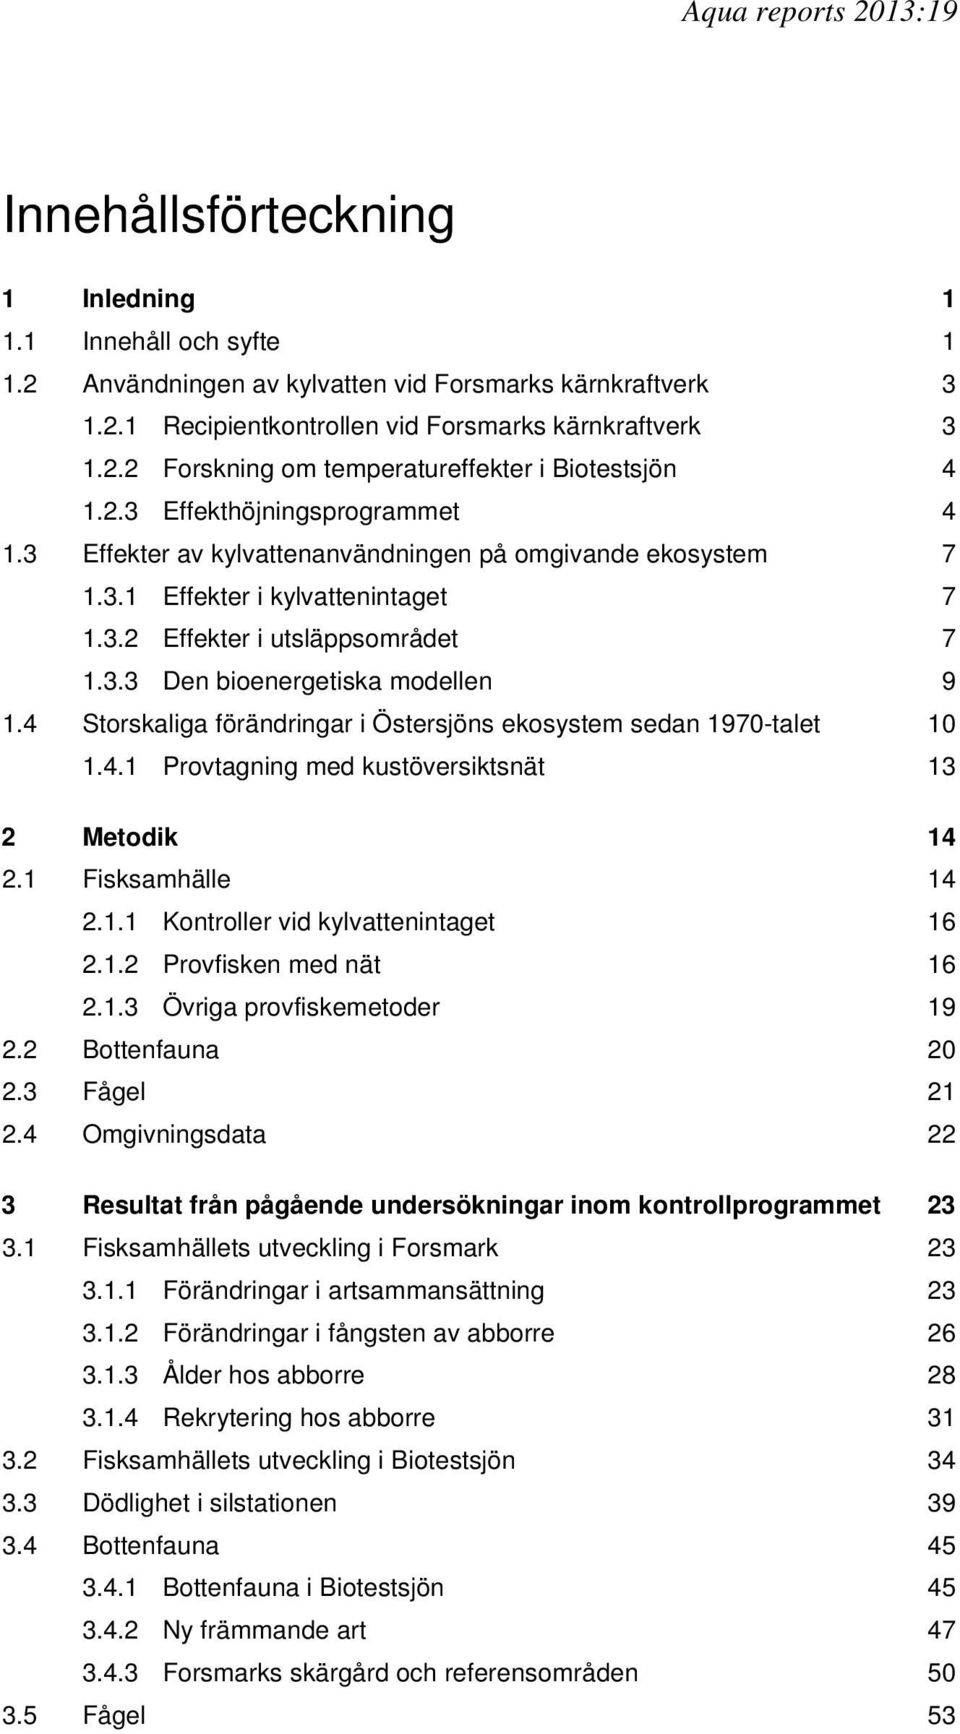 4 Storskaliga förändringar i Östersjöns ekosystem sedan 1970-talet 10 1.4.1 Provtagning med kustöversiktsnät 13 2 Metodik 14 2.1 Fisksamhälle 14 2.1.1 Kontroller vid kylvattenintaget 16 2.1.2 Provfisken med nät 16 2.